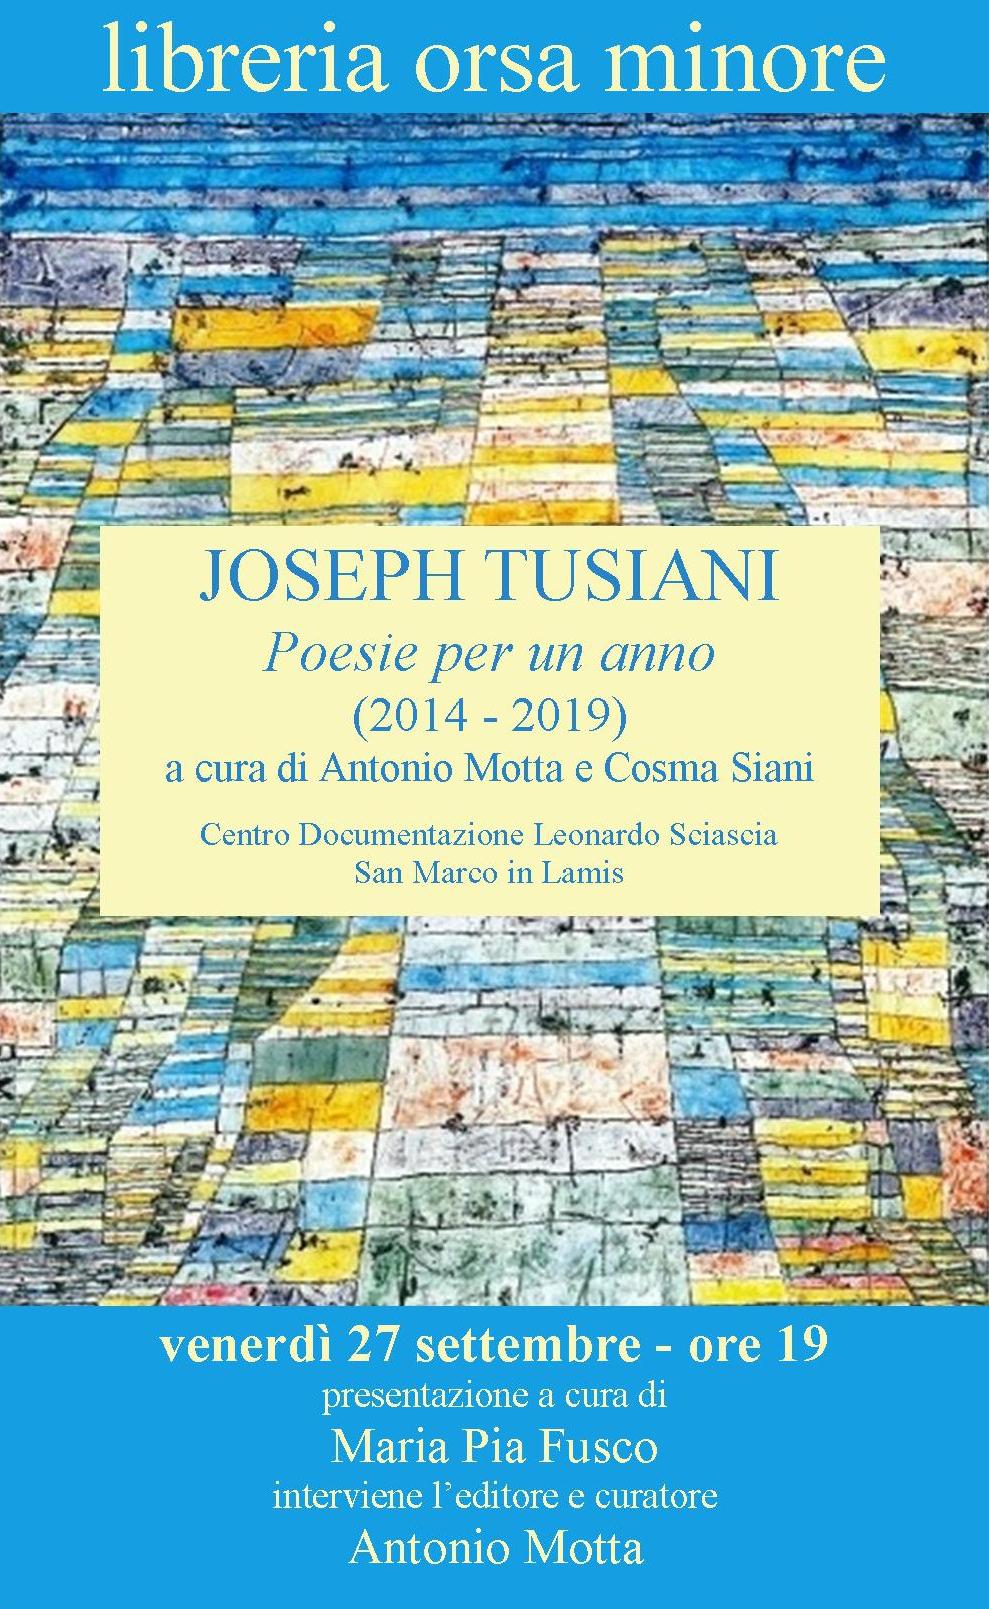 Joseph Tusiani